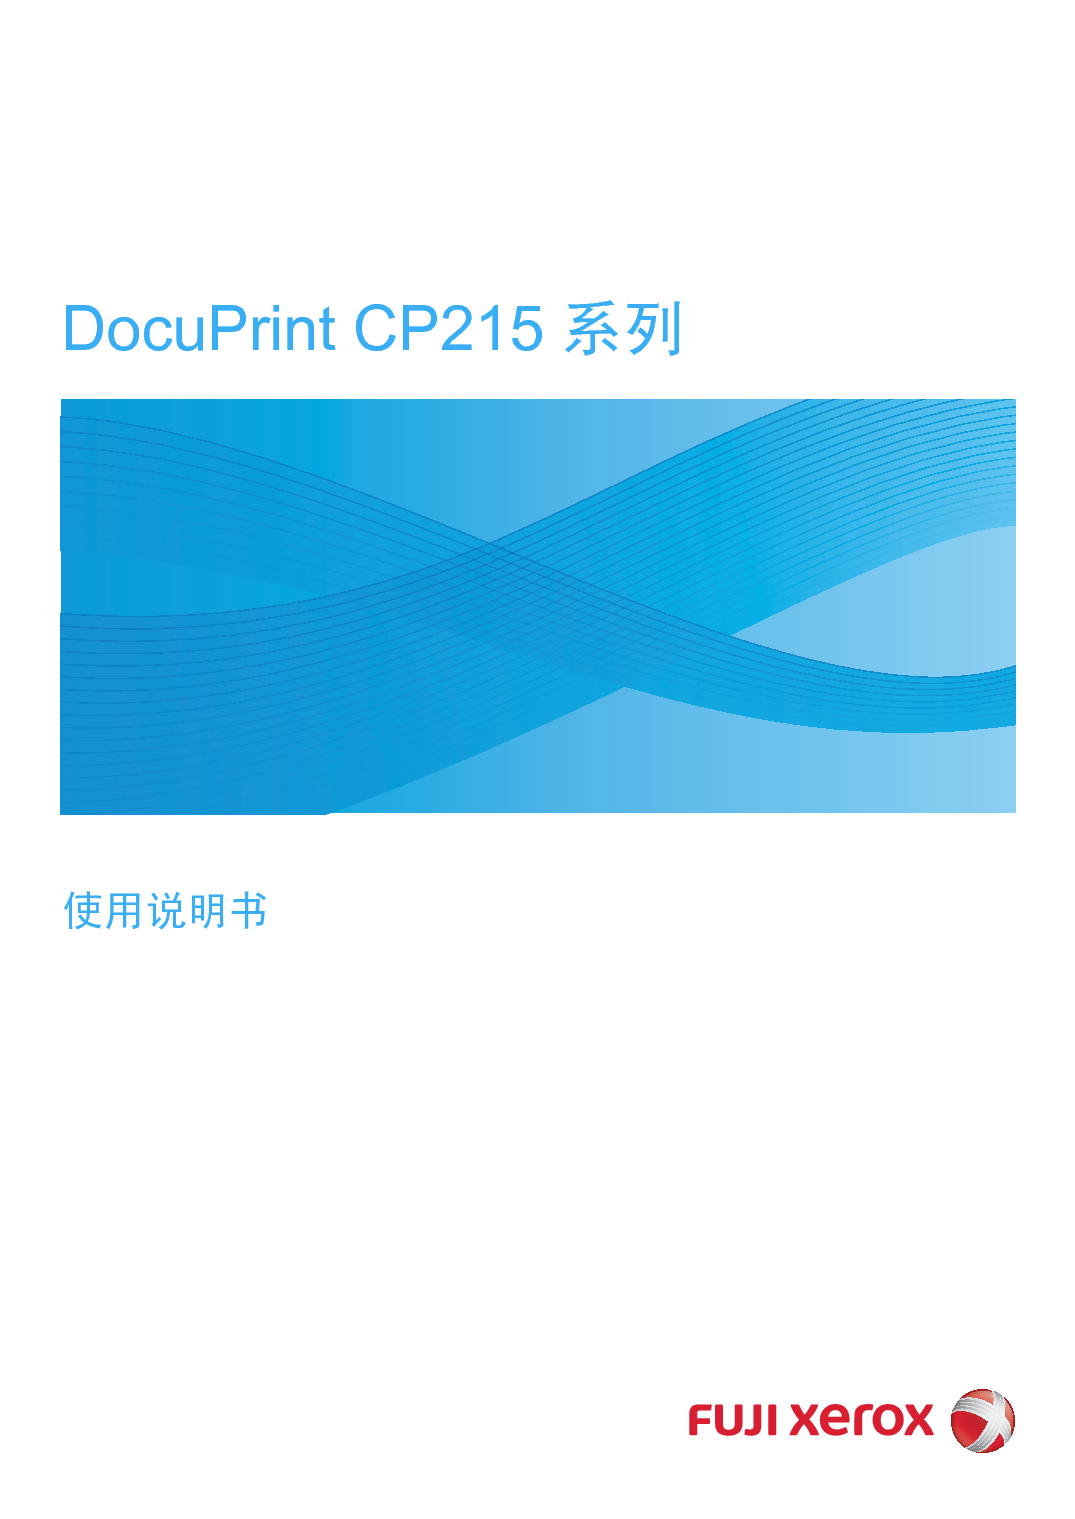 富士施乐 Fuji Xerox DocuPrint CP215 使用说明书 封面